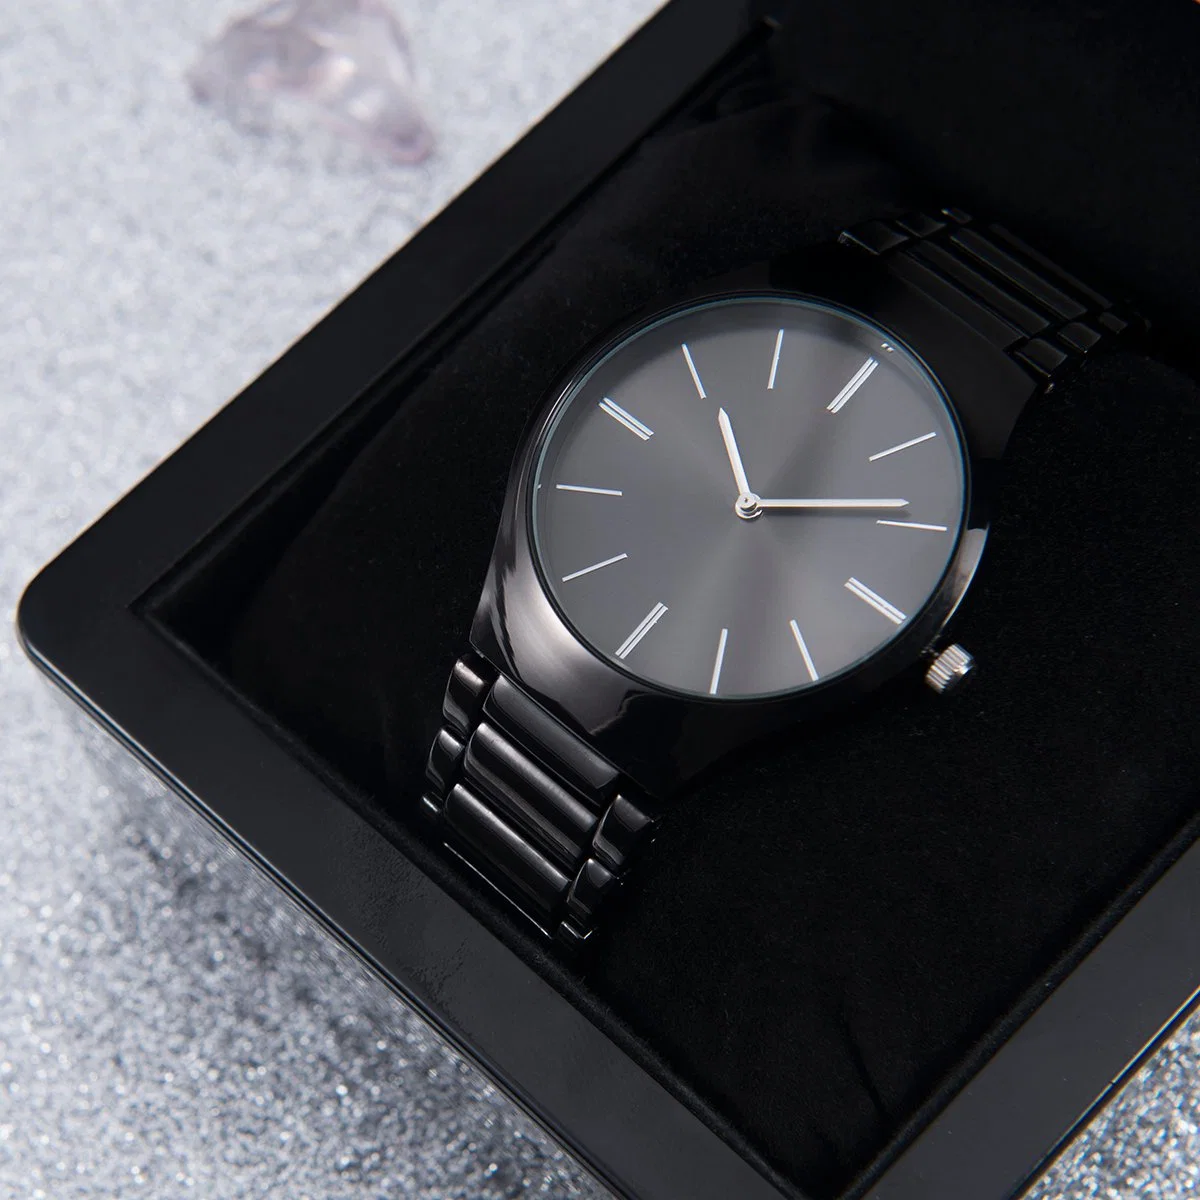 El lujo de acero inoxidable reloj hombre reloj de pulsera reloj de los hombres de alta calidad relojes de regalo de logotipo personalizado